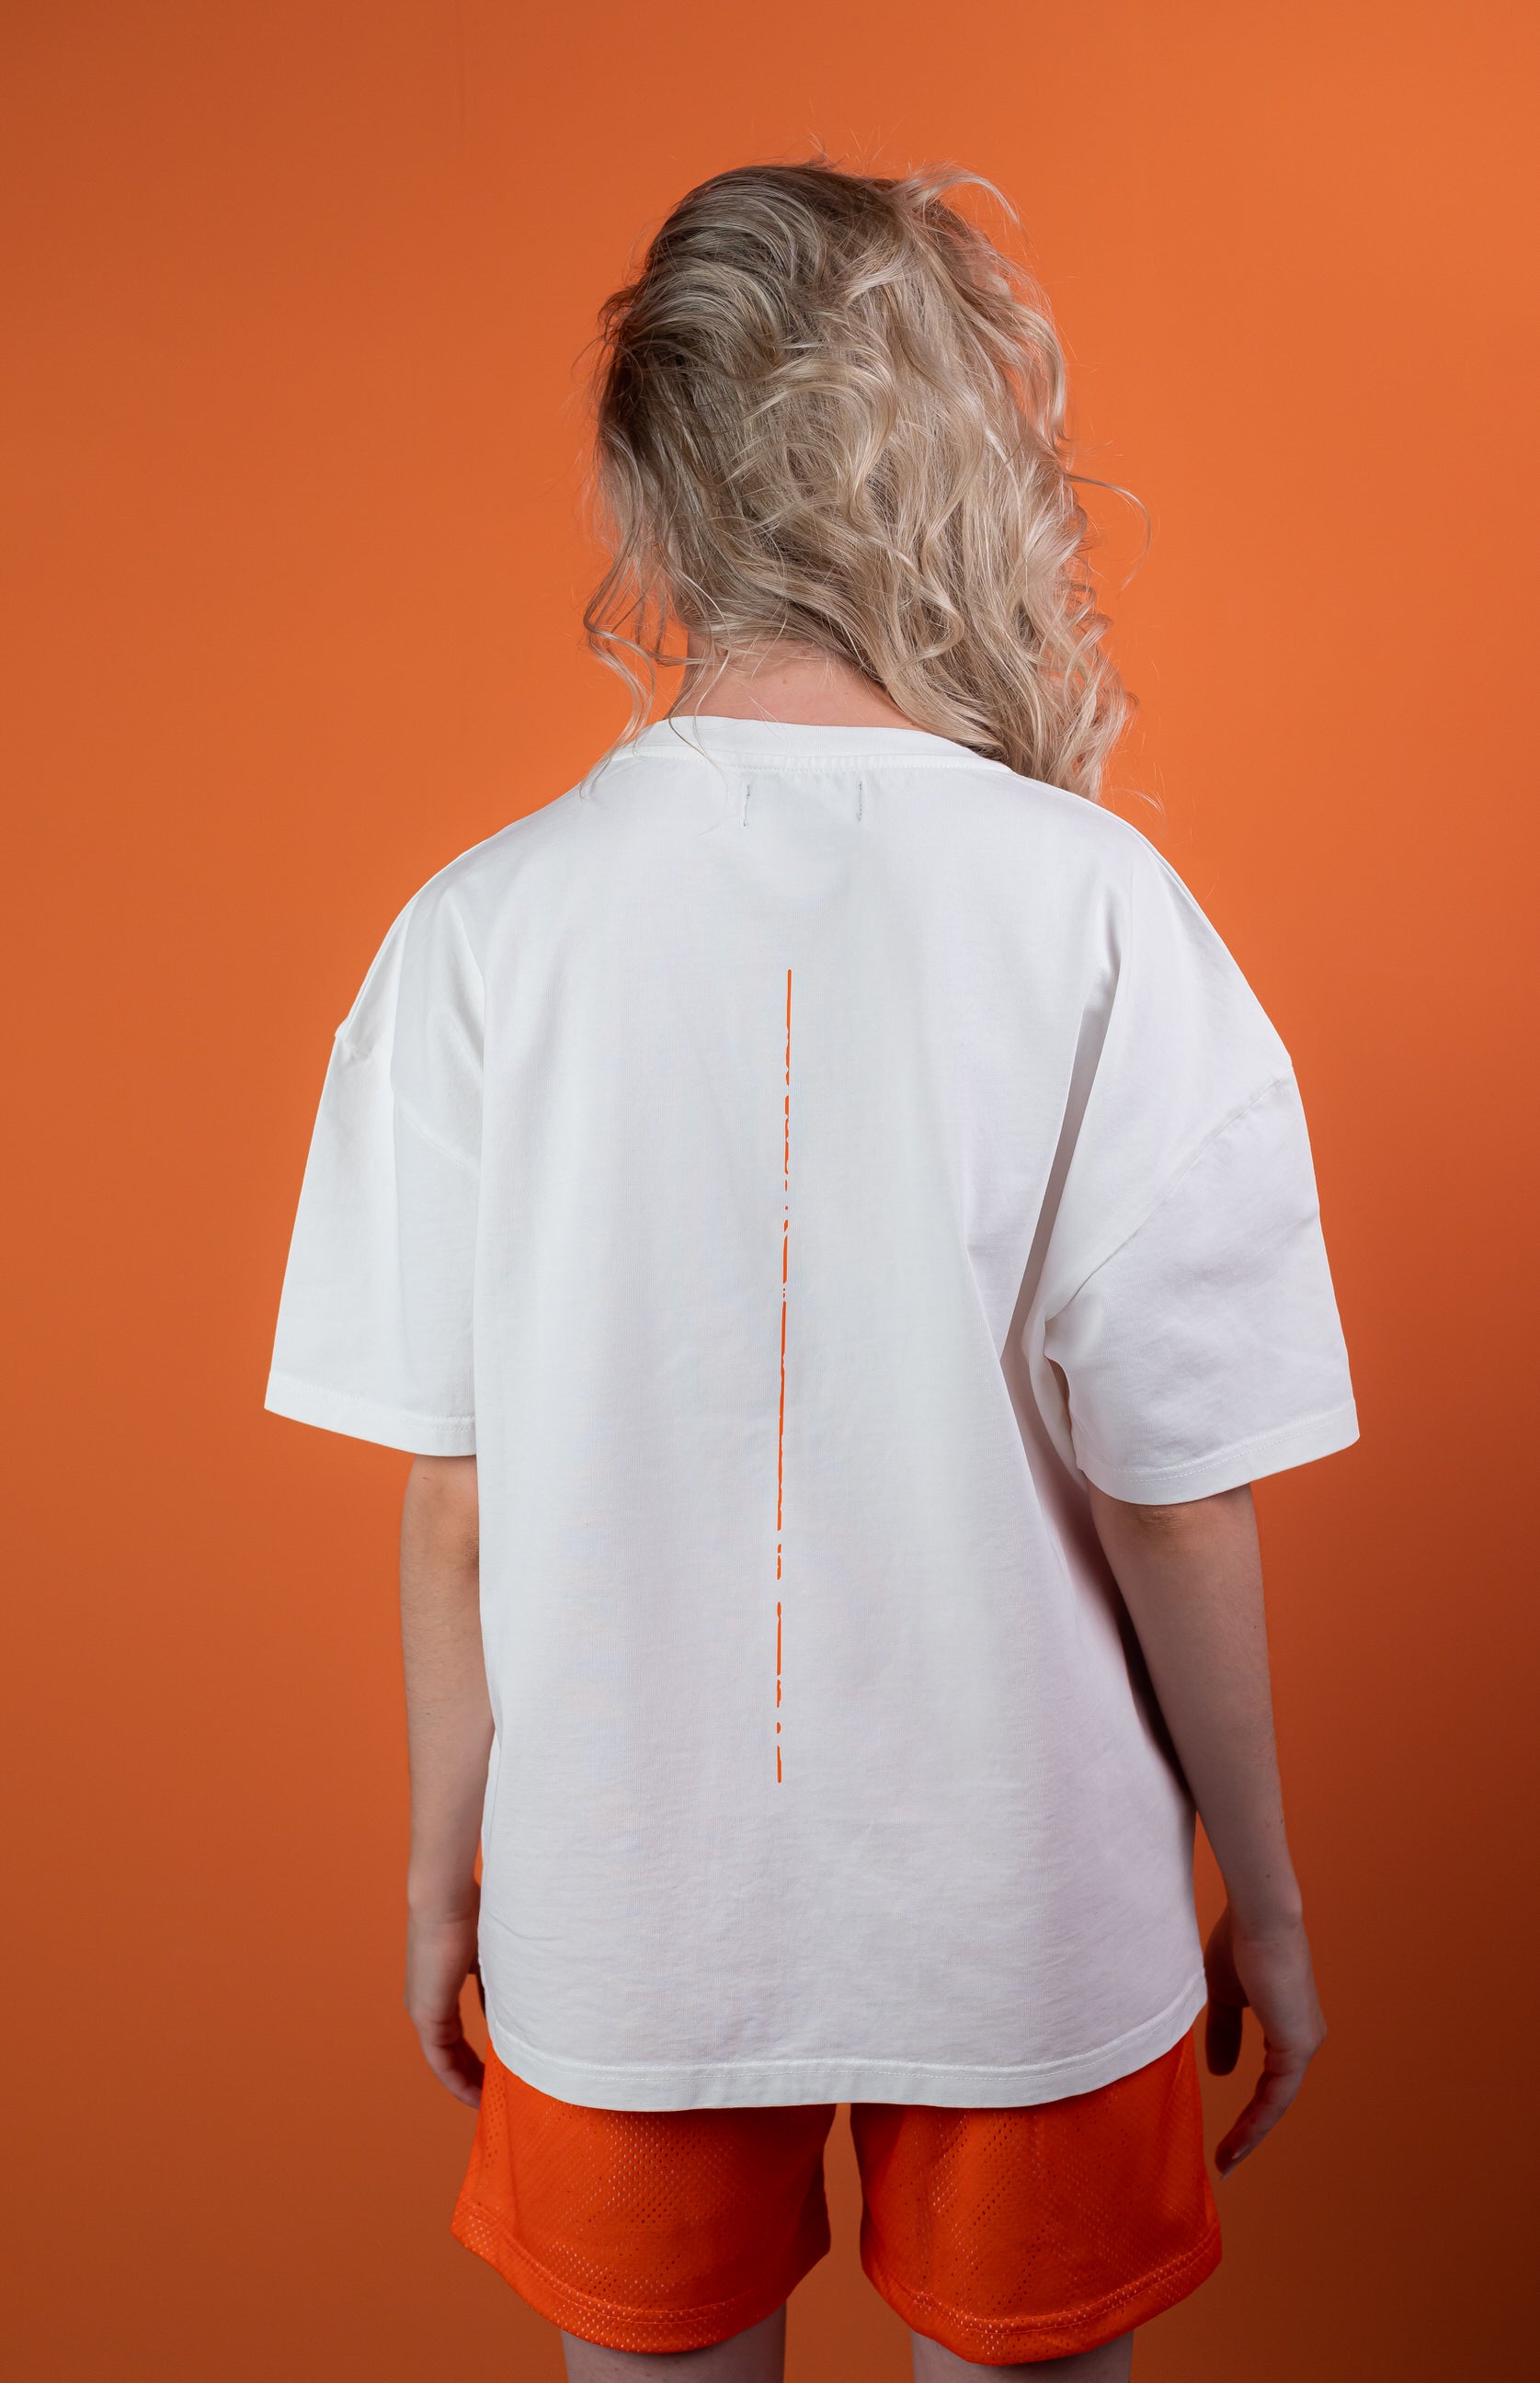 Female Model wearing White oversize tshirt with orange trace on the back